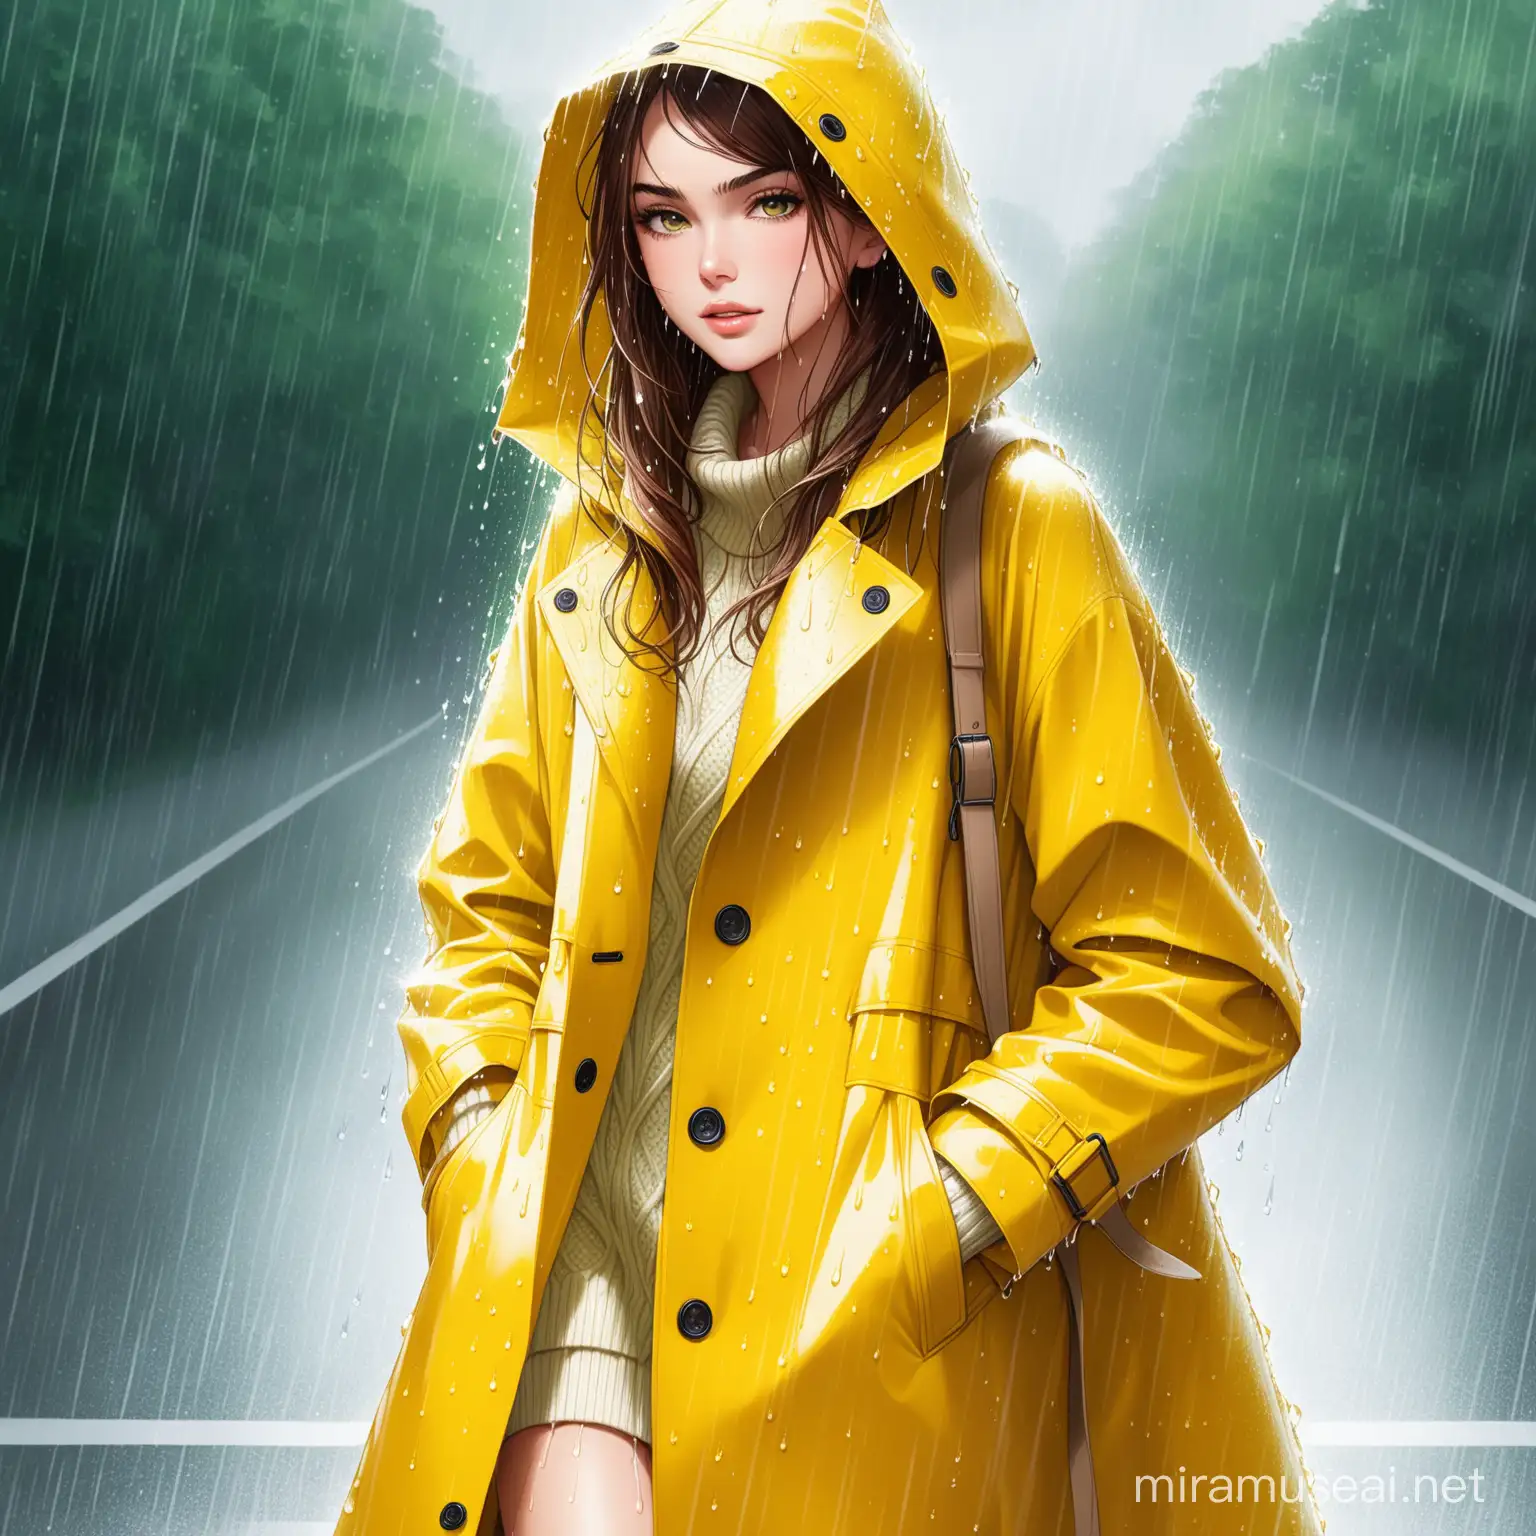 Classic Yellow Rain Coat with Irish Sweater Hybrid in Rainy Setting